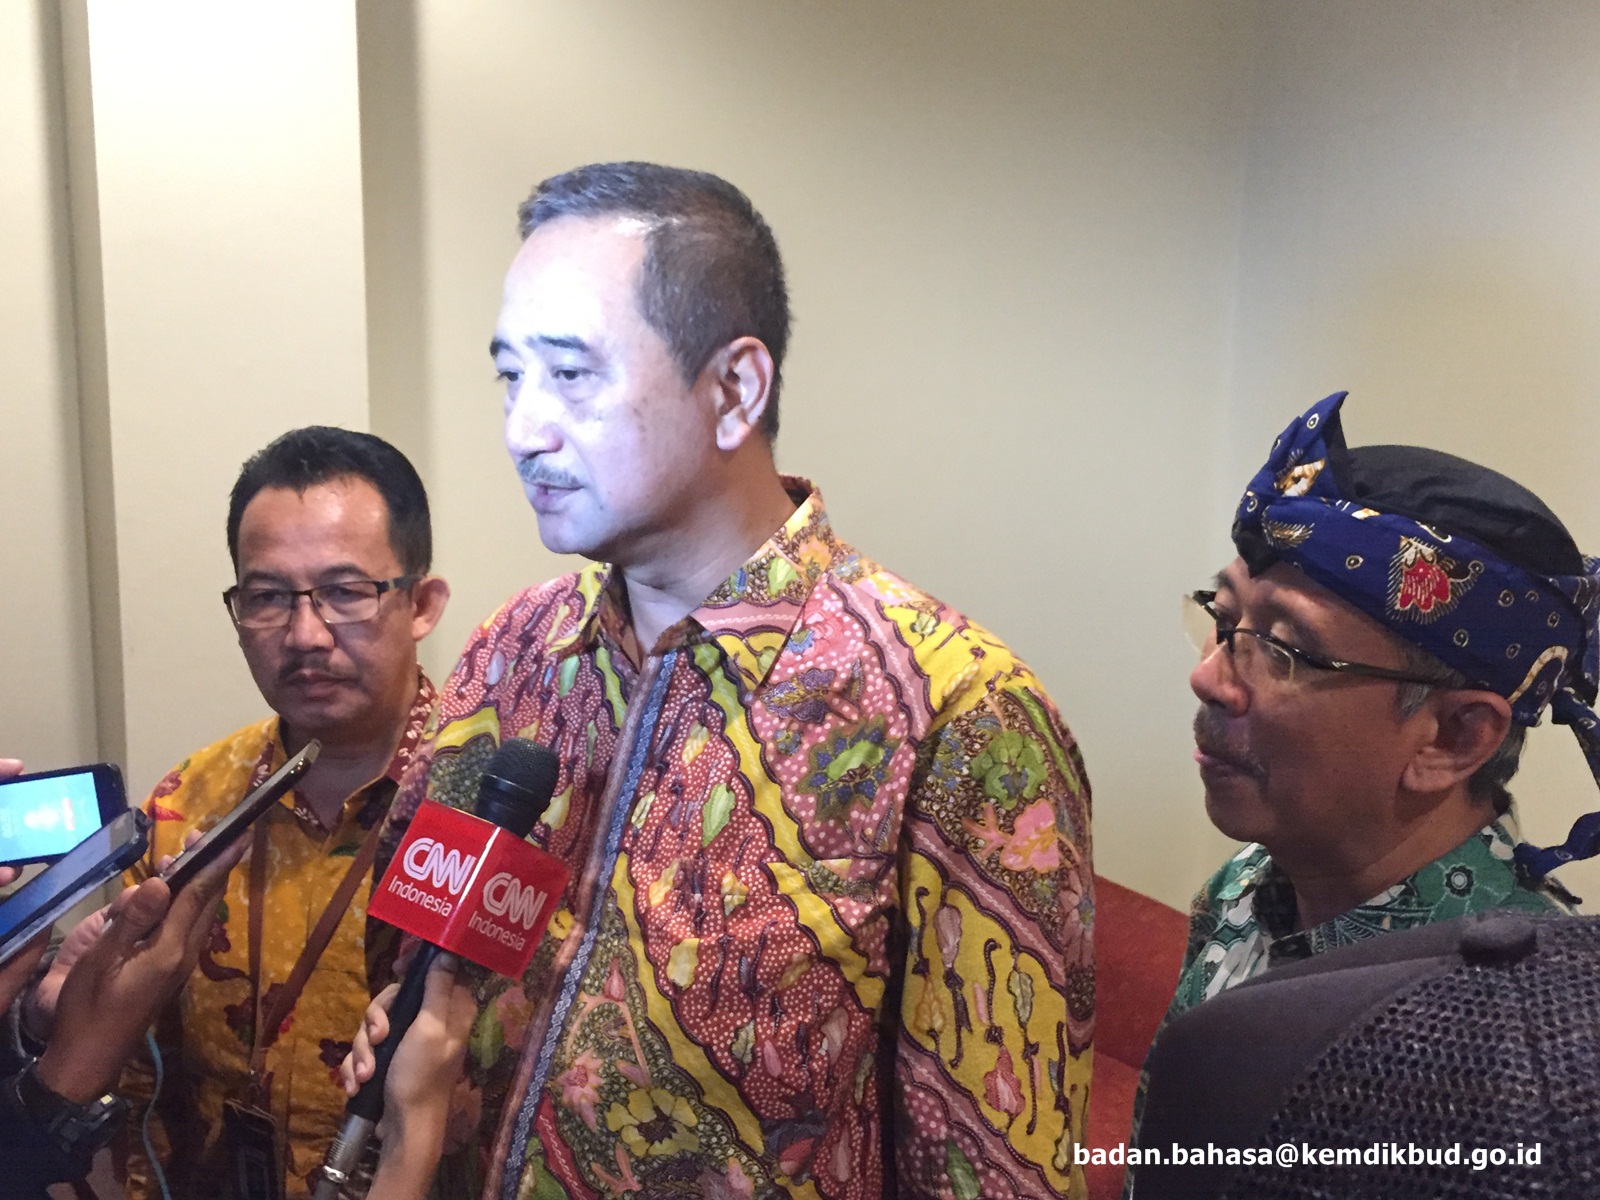 Komisi X DPR RI Dukung Upaya Internasionalisasi Bahasa Indonesia dan Pelestarian Bahasa Daerah